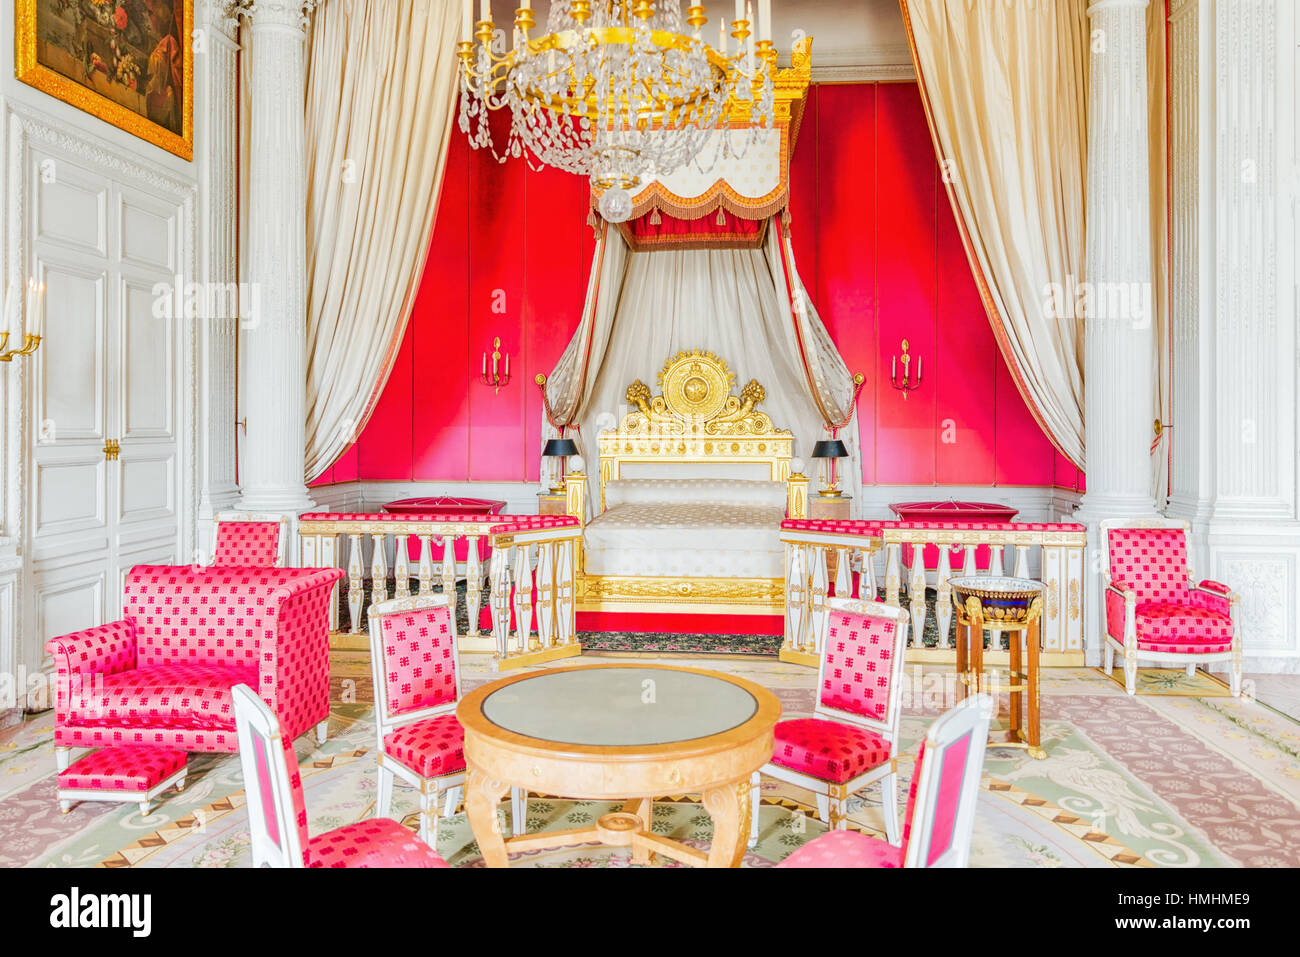 VERSAILLES, FRANCE - Juillet 02, 2016 : Chambery(Appartements) de l'Impératrice au Grand Trianon. Château de Versailles. La France. Banque D'Images